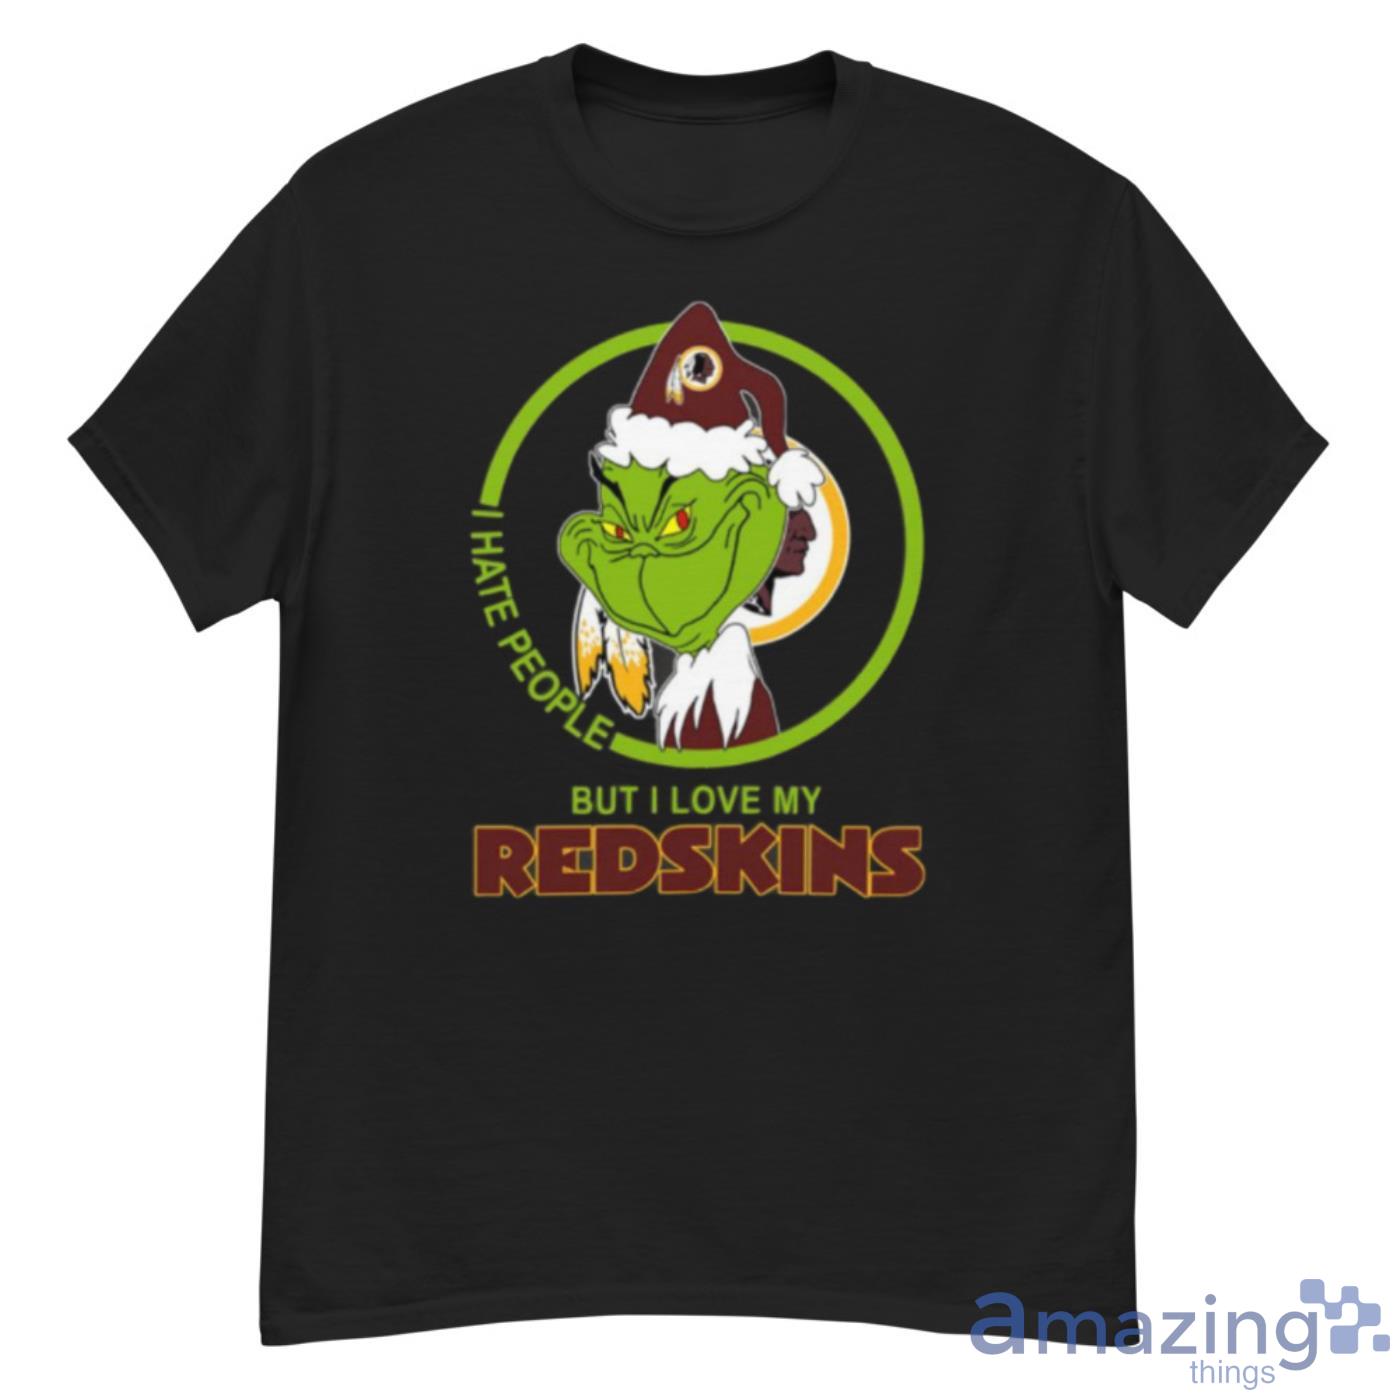 Washington Redskins NFL Red Bomber Jacket - T-shirts Low Price